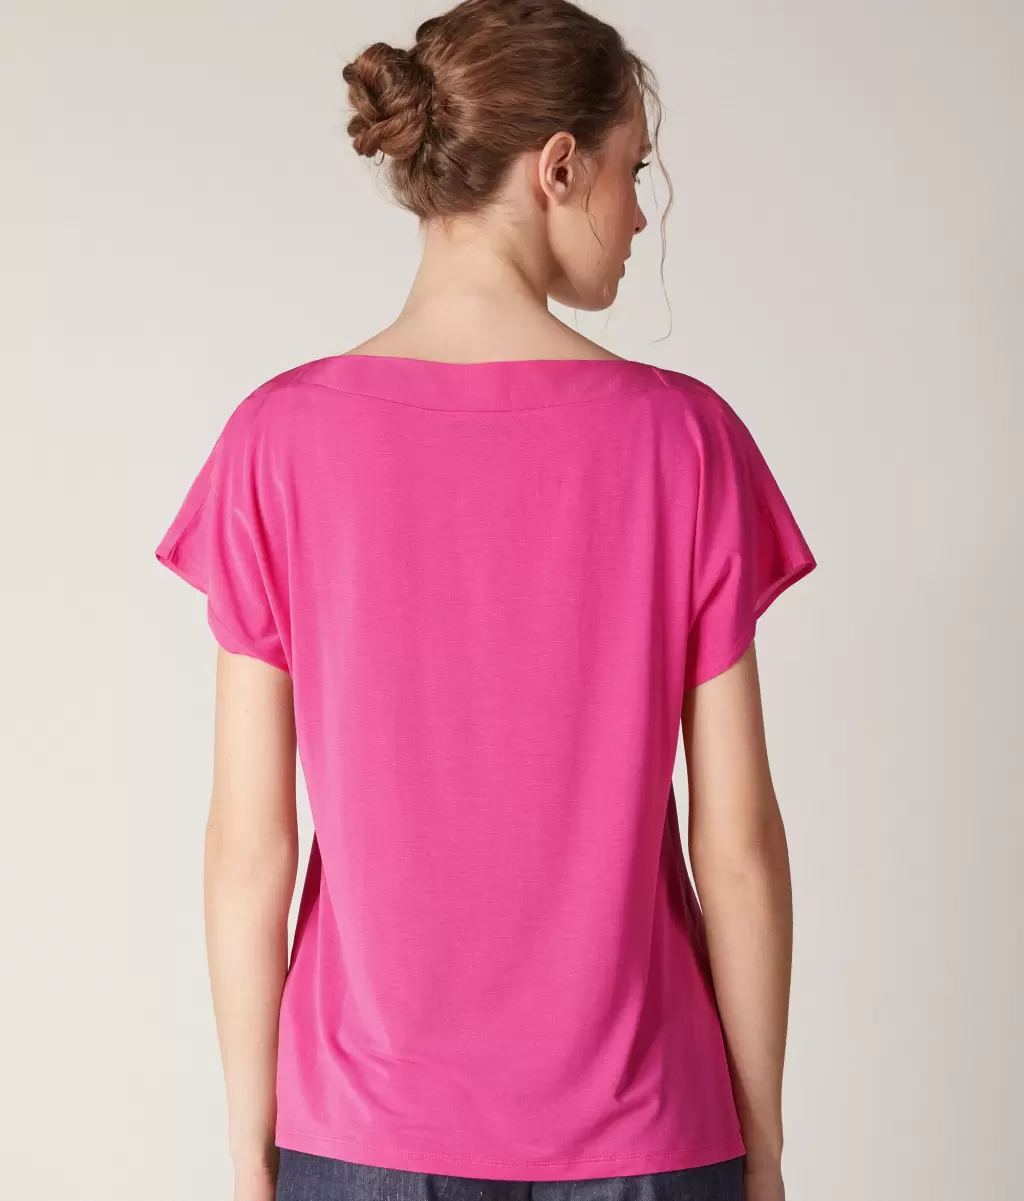 Koszulka Z Dekoltem W Łódkę Z Jedwabiu I Modalu Kobieta Topy I T-Shirty Pink Falconeri - 2